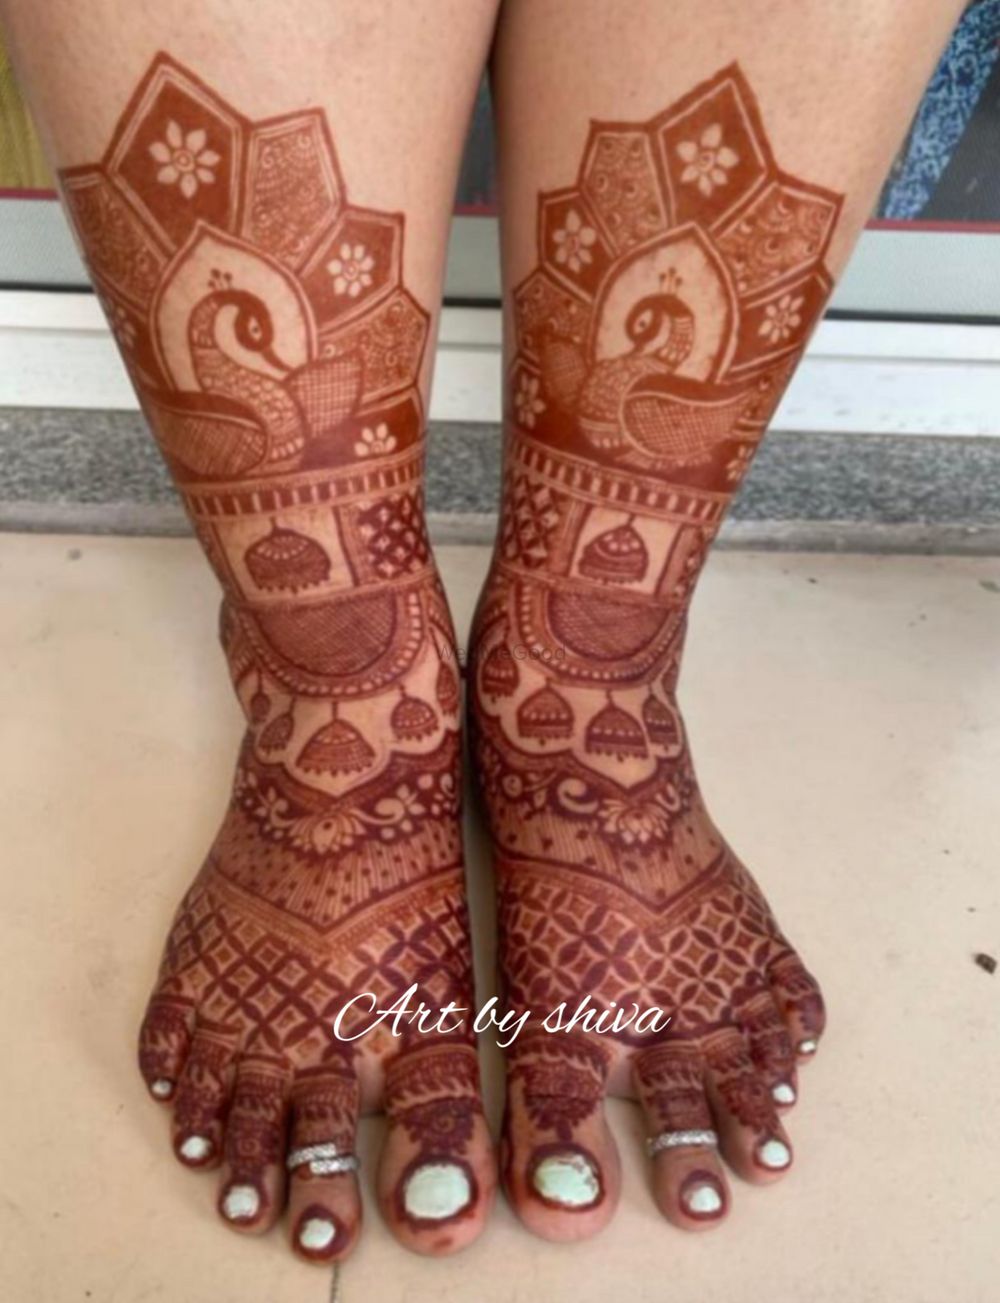 Photo From Legs design - By Shiva Mehandi Art